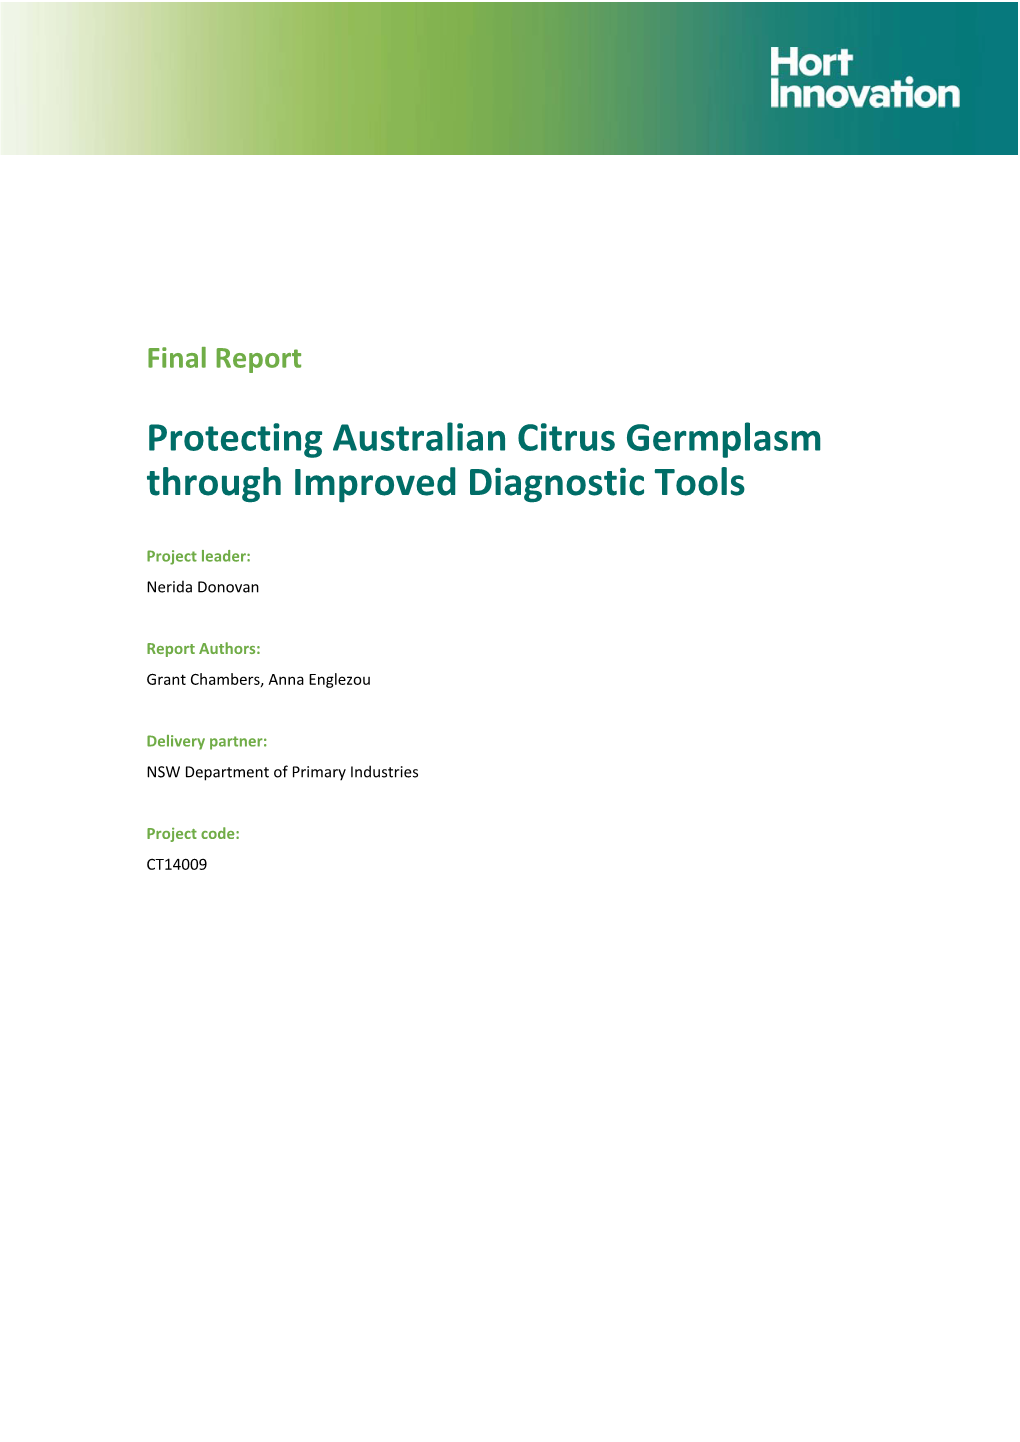 Protecting Australian Citrus Germplasm Through Improved Diagnostic Tools